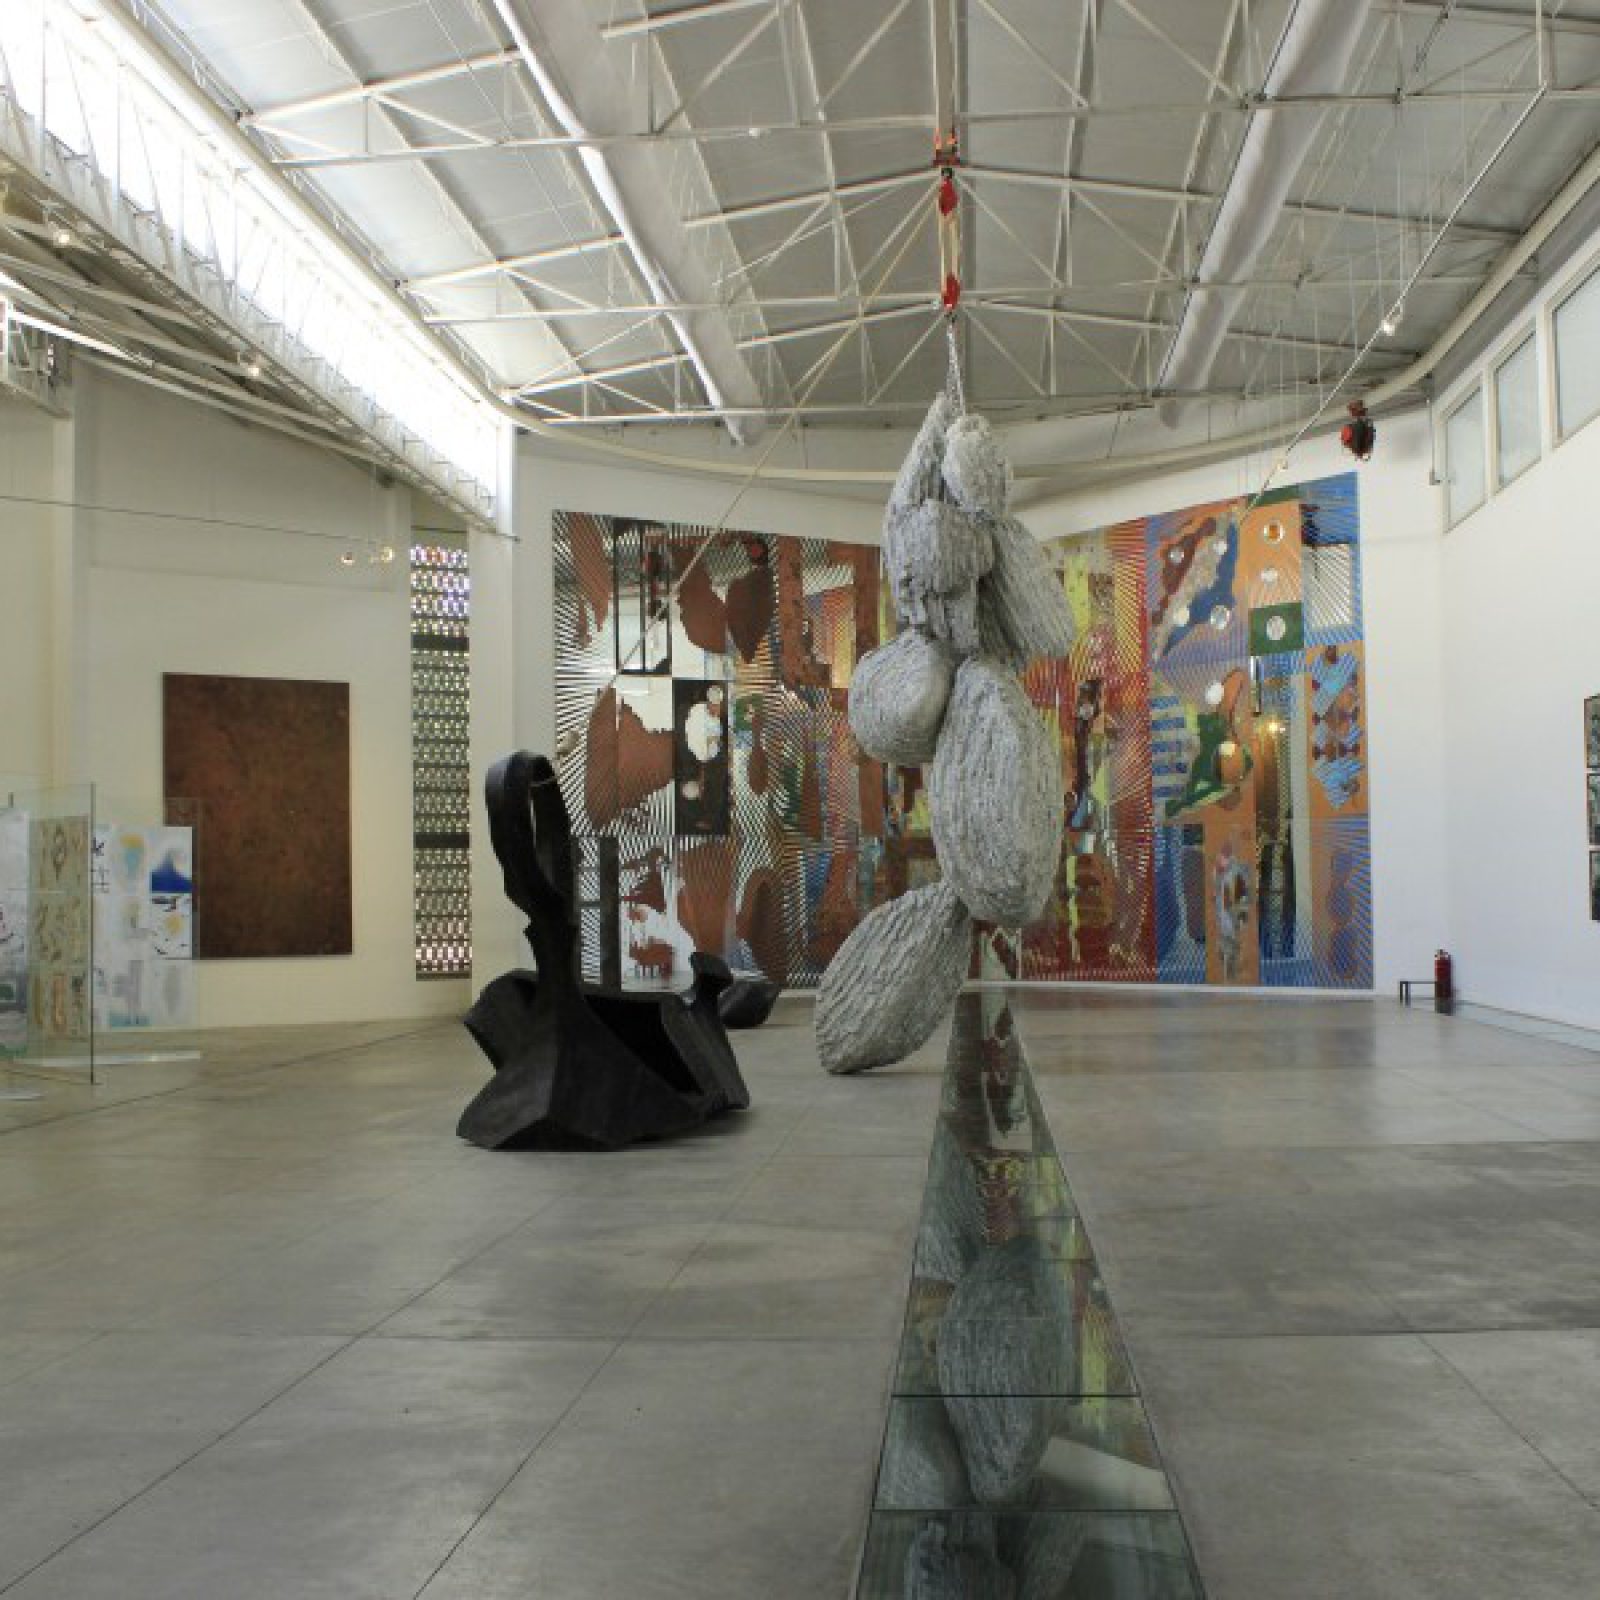 Vista de la exposición "El Narciso de Jesús", de Ray Smith, en La Tallera, Cuernavaca, México, 2017-2018. Foto cortesía de La Tallera